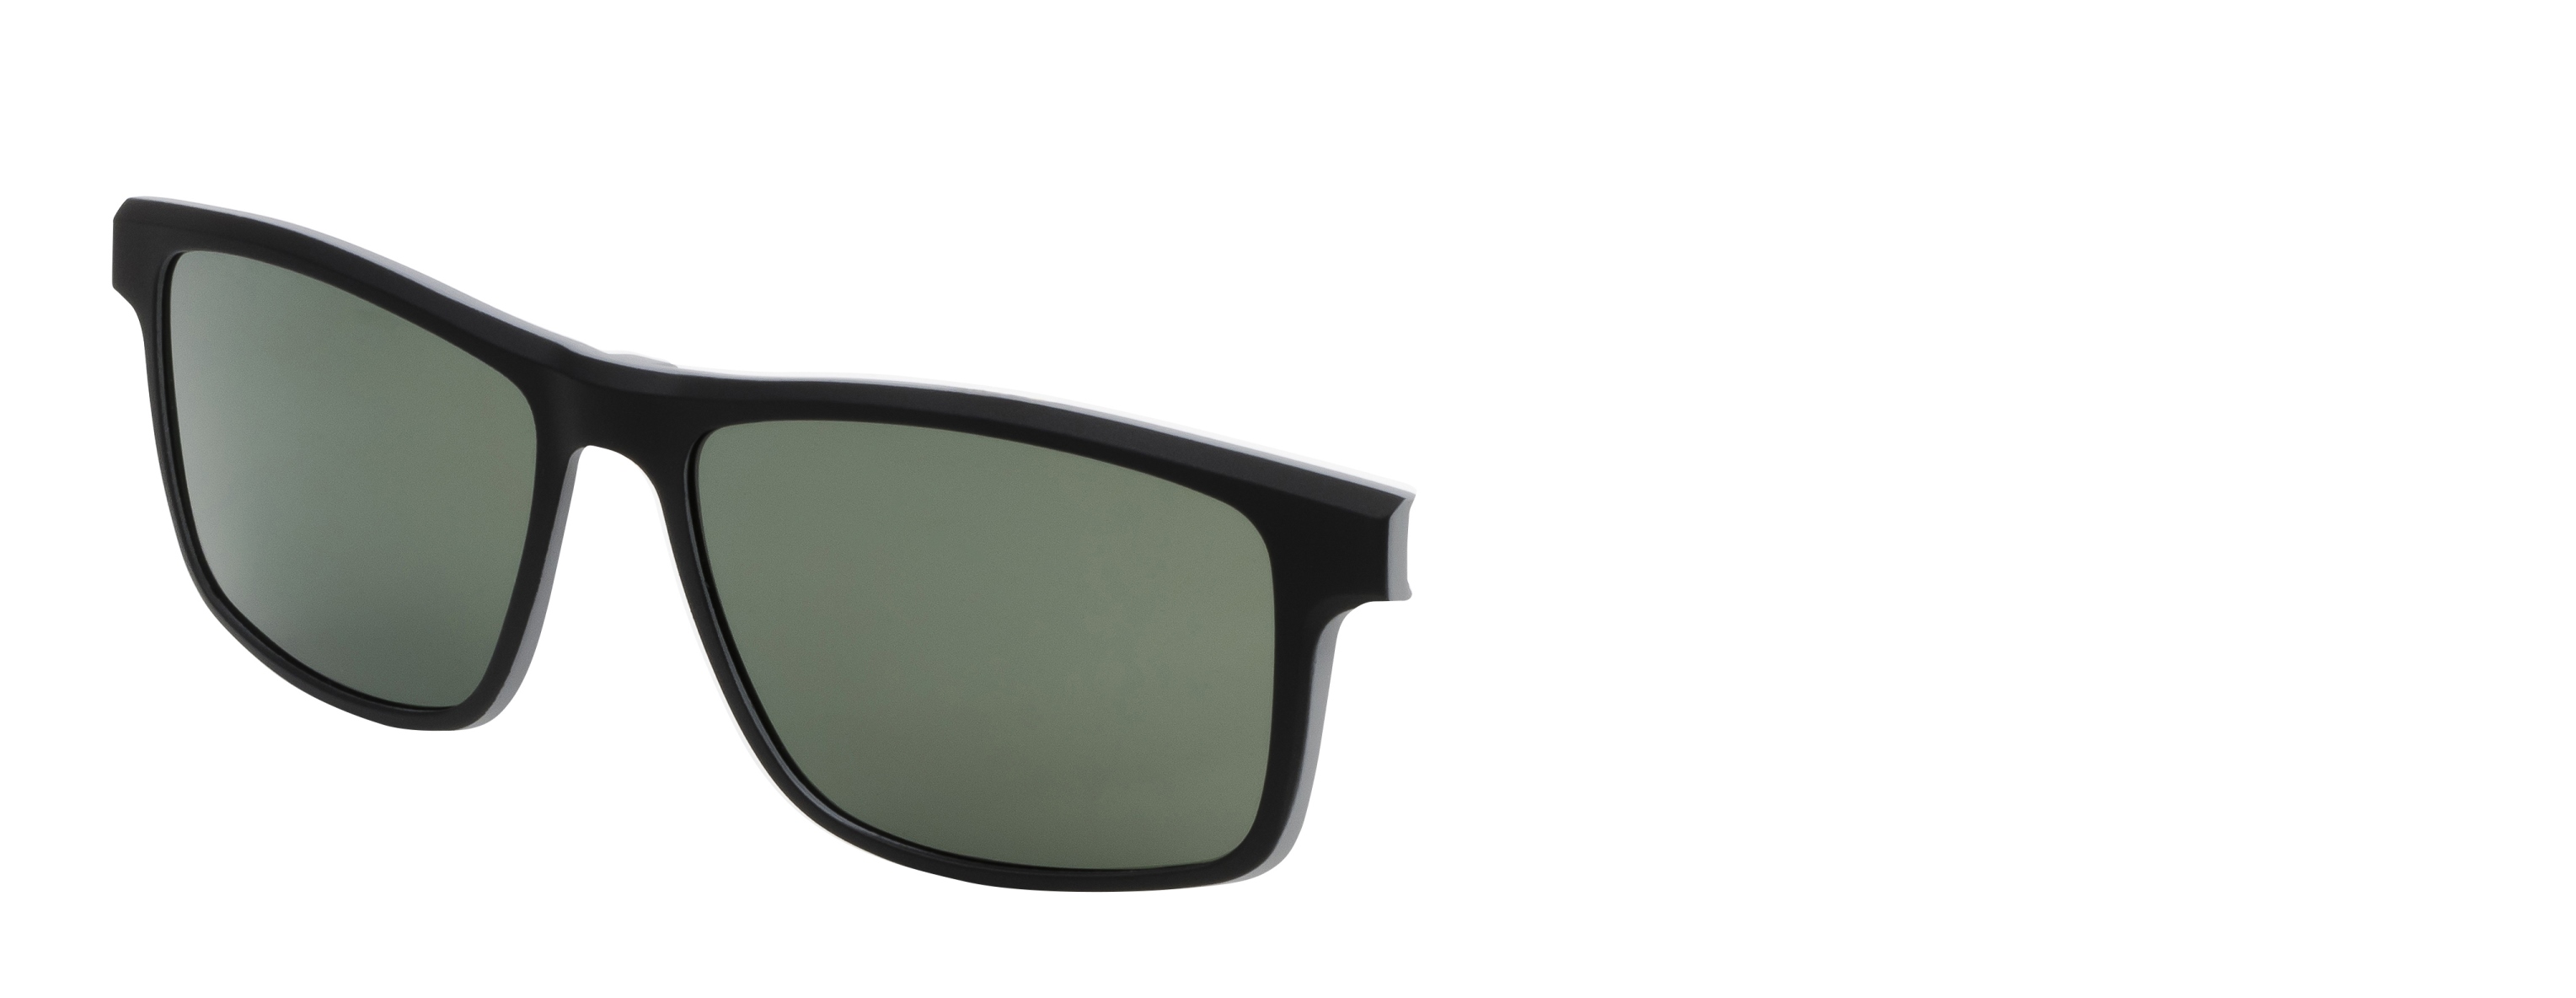 Náhradní dioptrický klip k brýlím Relax  Bern RM135C3clip -